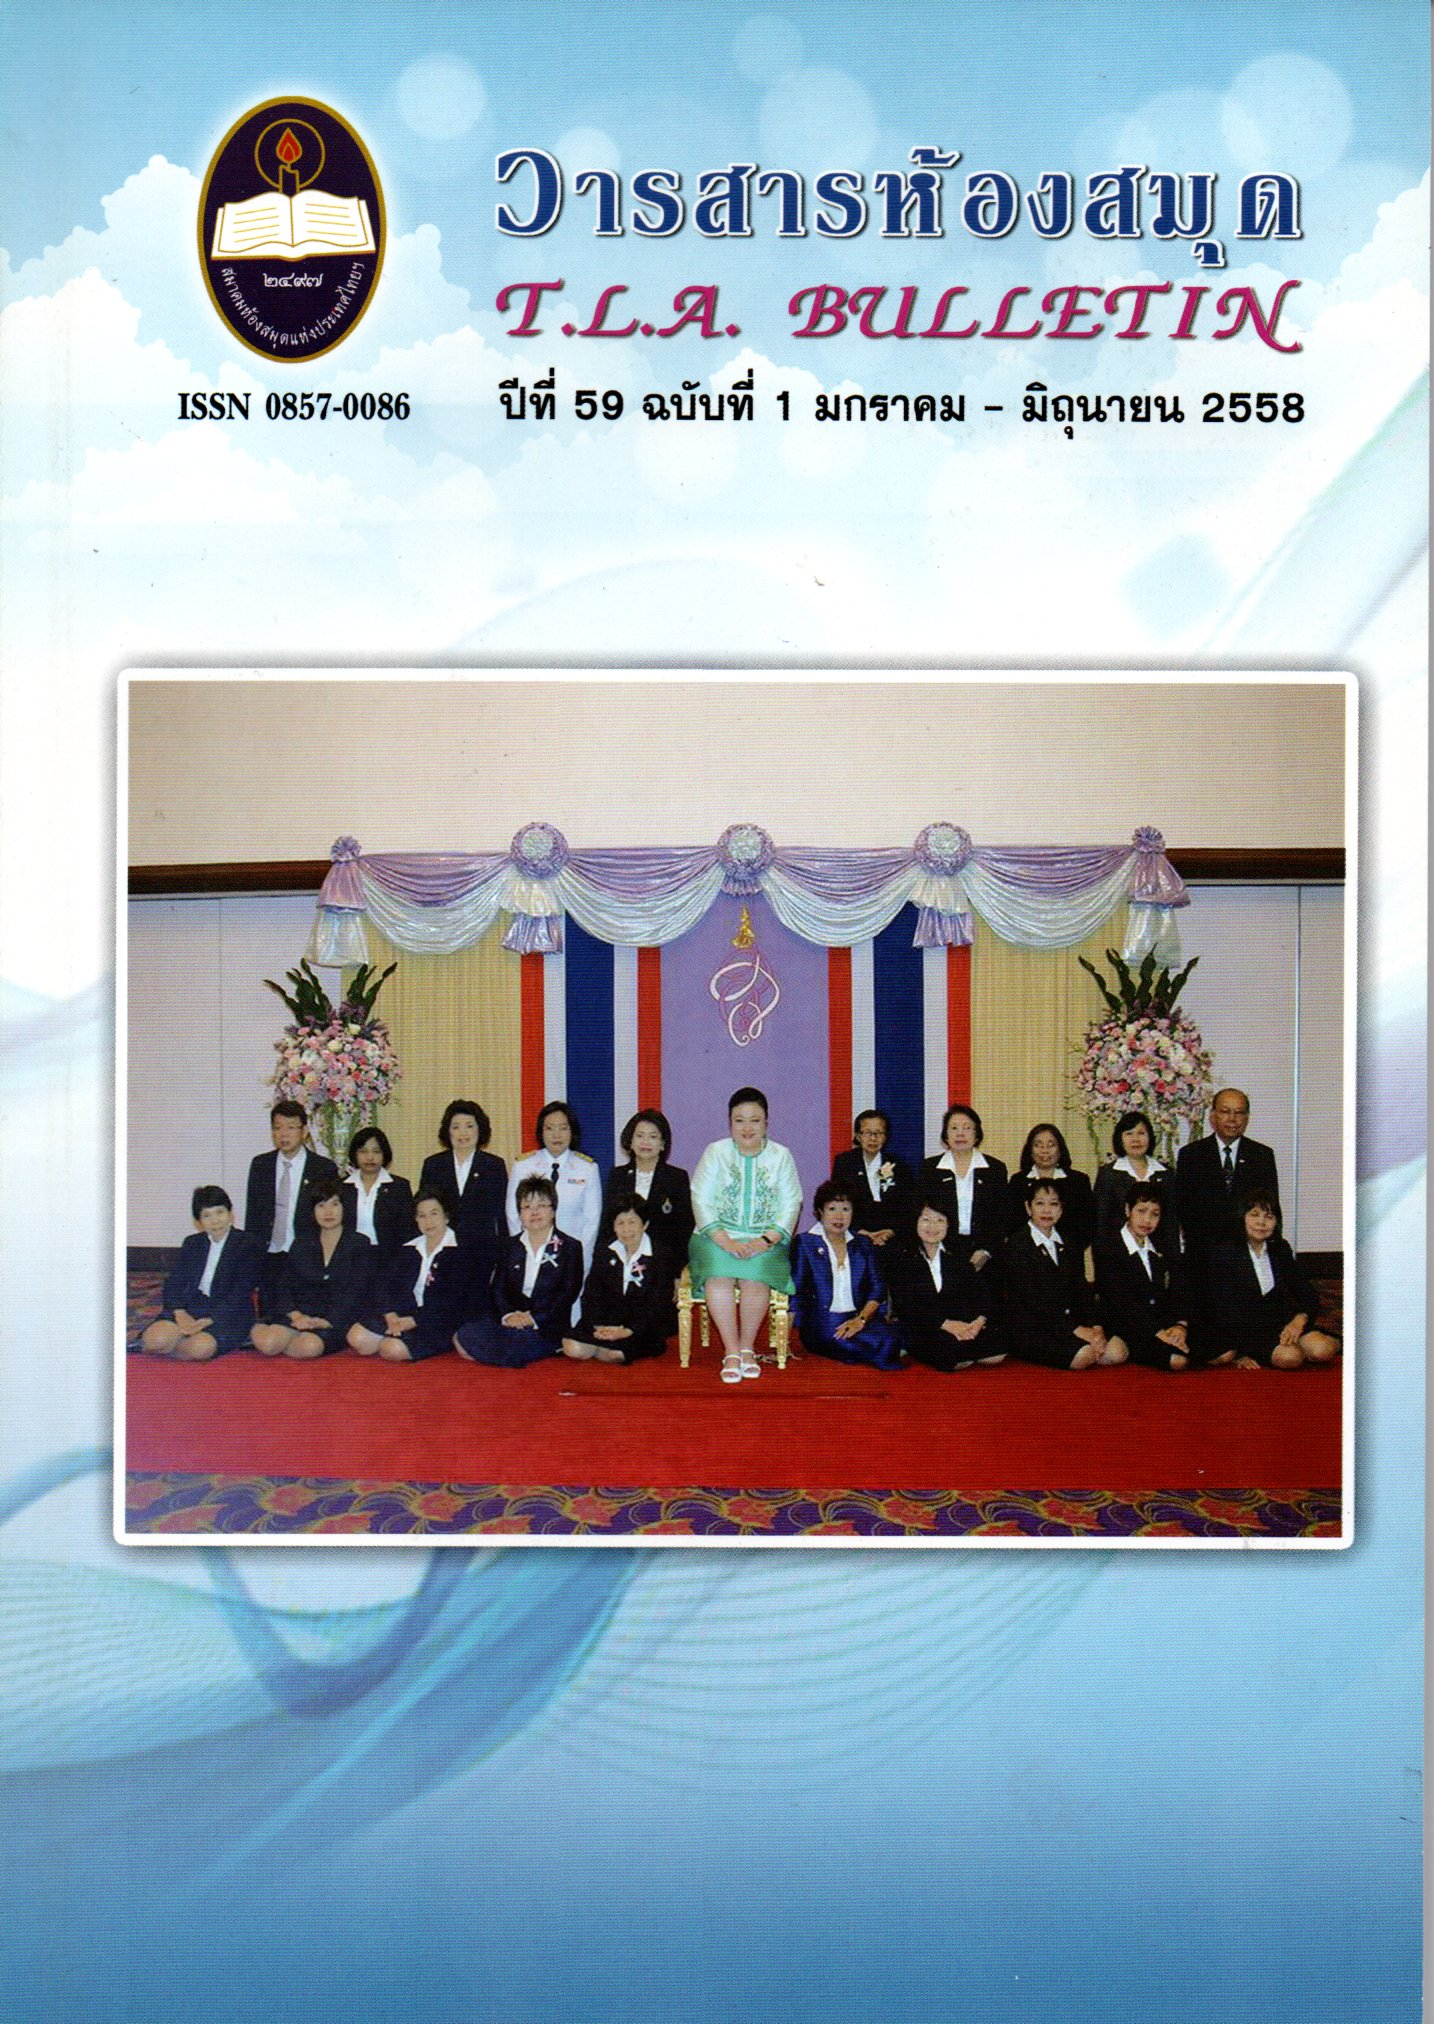 TLA Bulletin, Vol59 No1